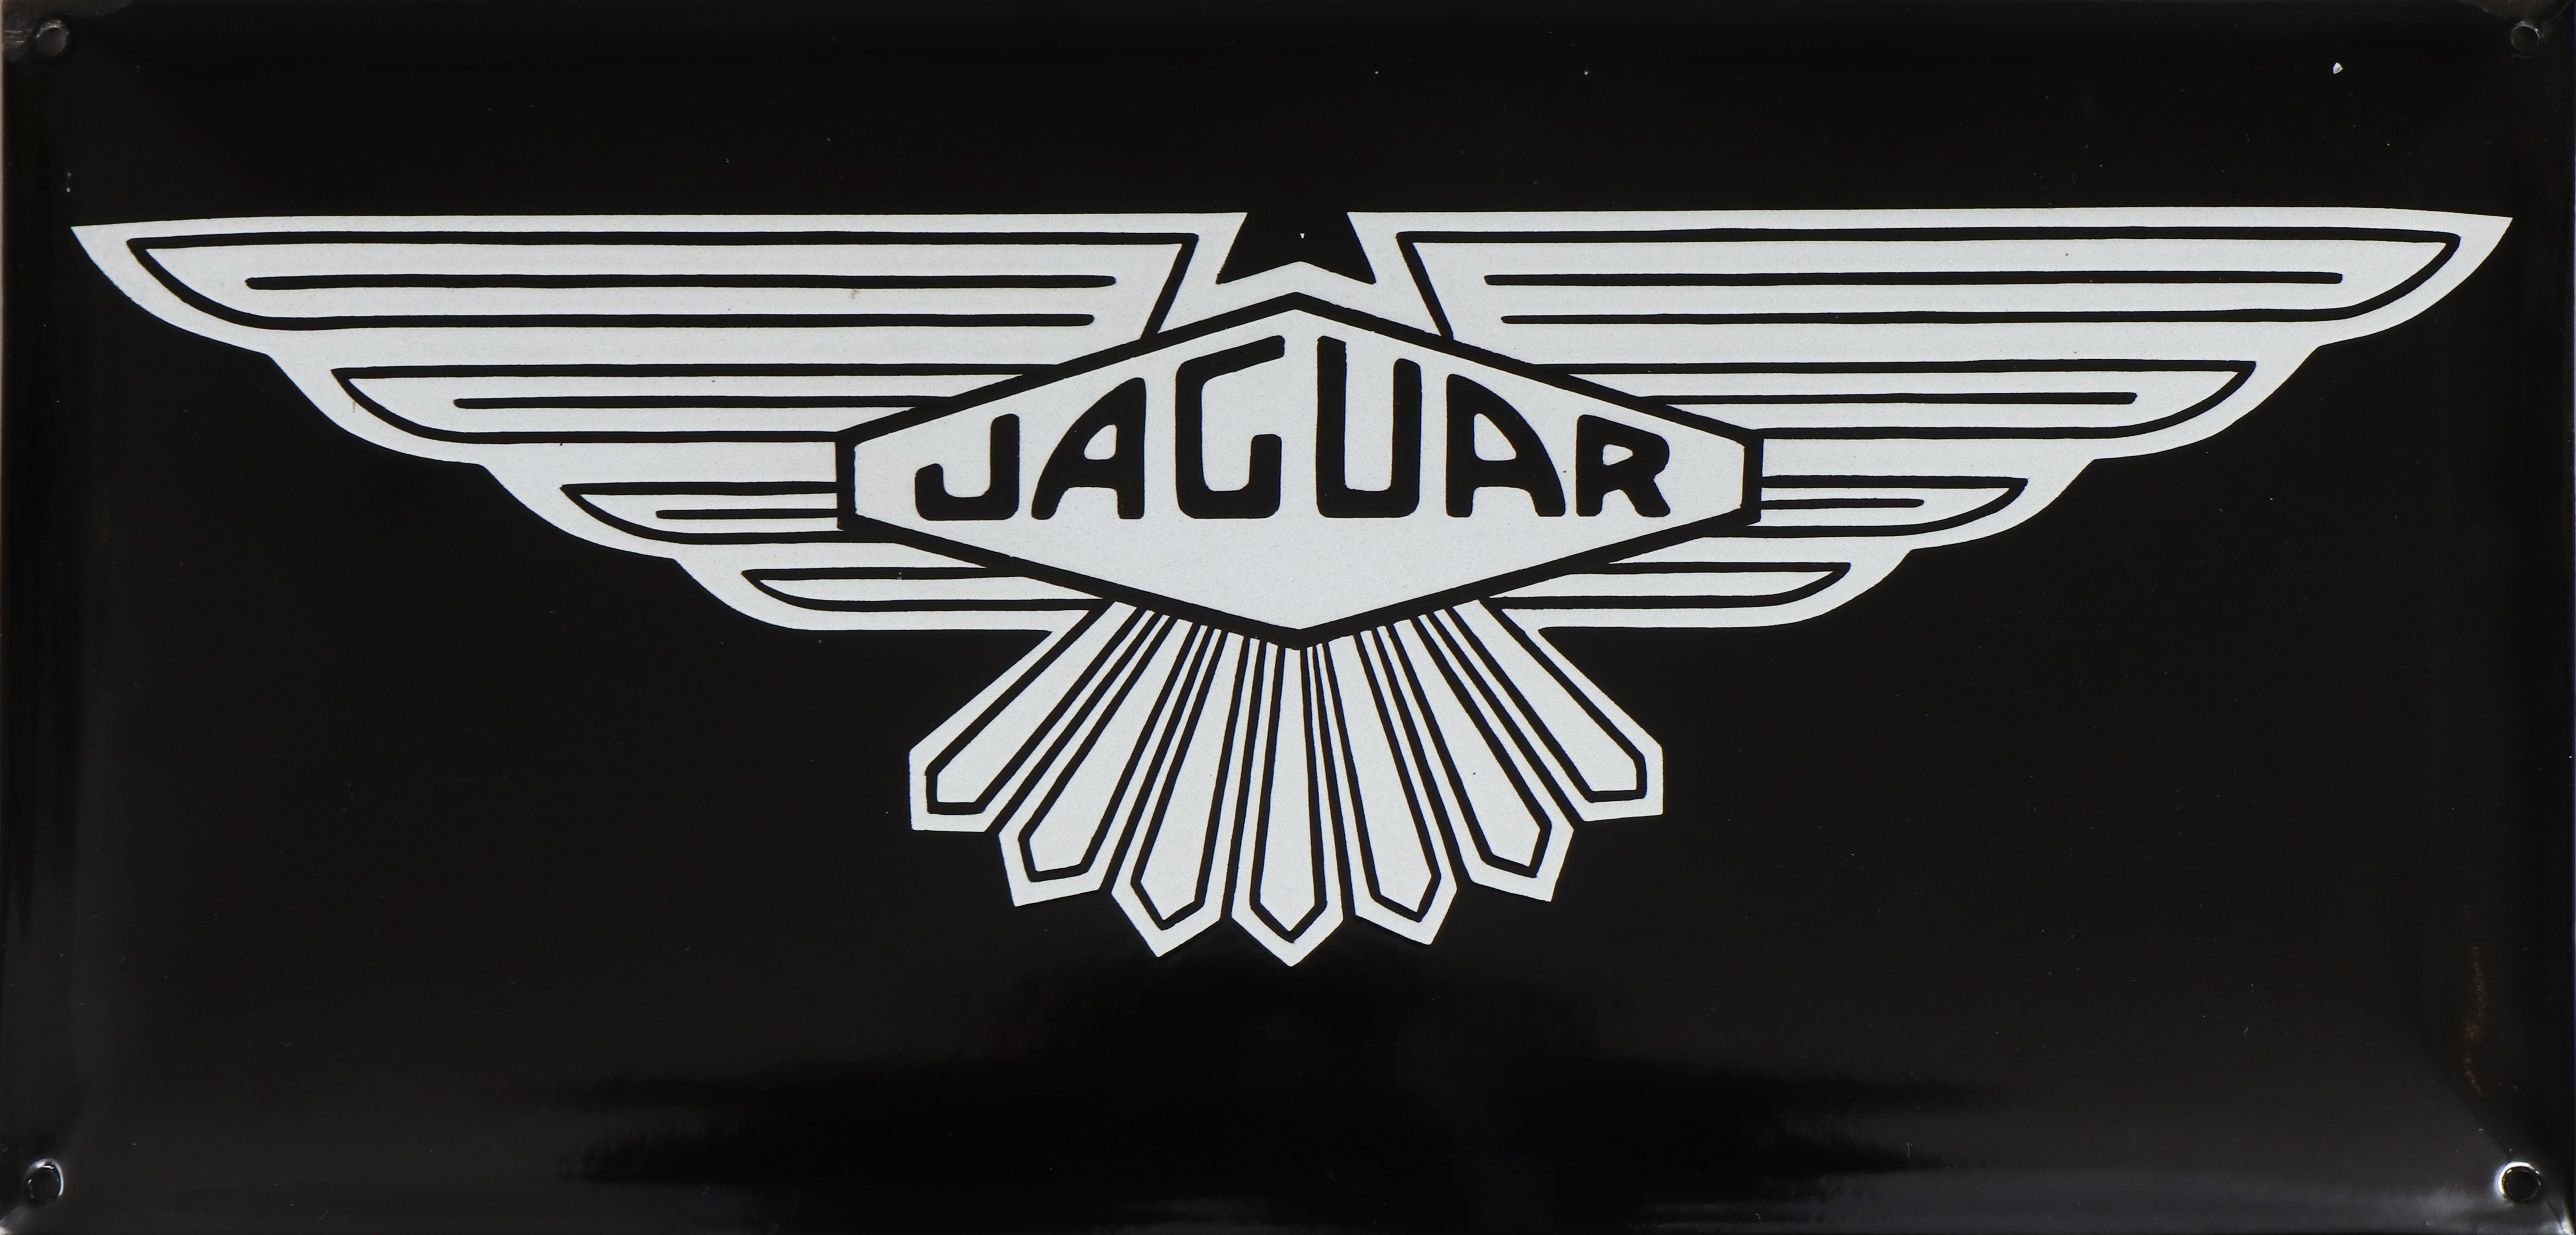 JAGUAR Emaille-Schild im Stile der 1940er Jahre